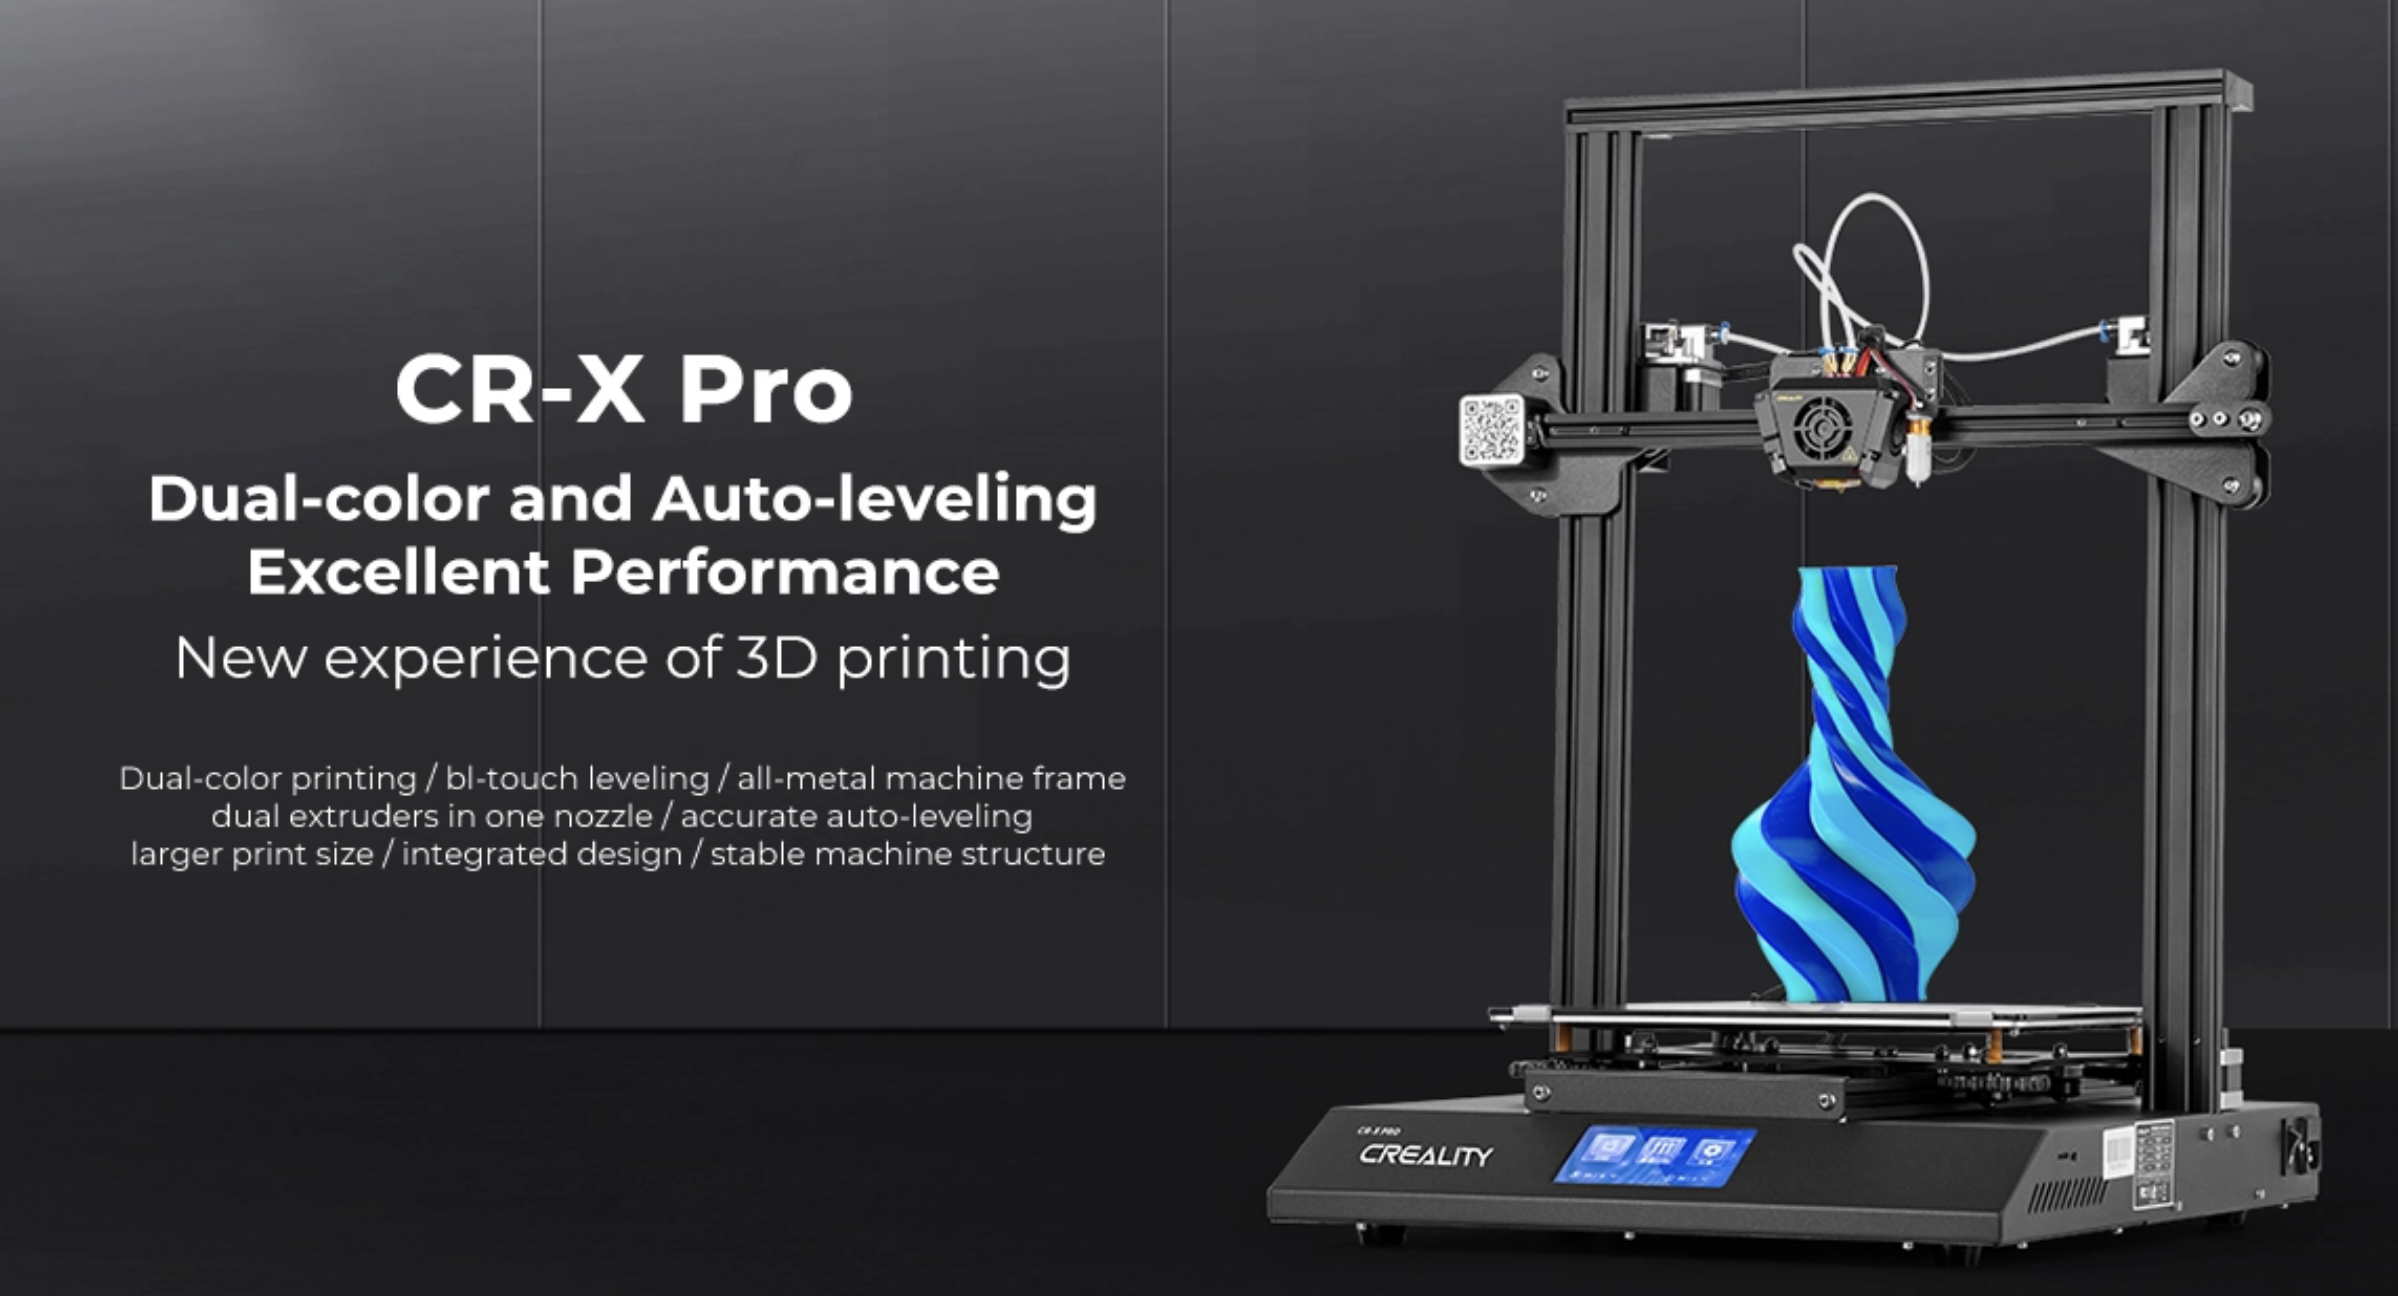 Creality CR-X PRO 3D Printer
크리얼리티 CR-X 프로
하나의 노즐에서 듀얼칼러, 듀얼 쿨링팬, 대형출력